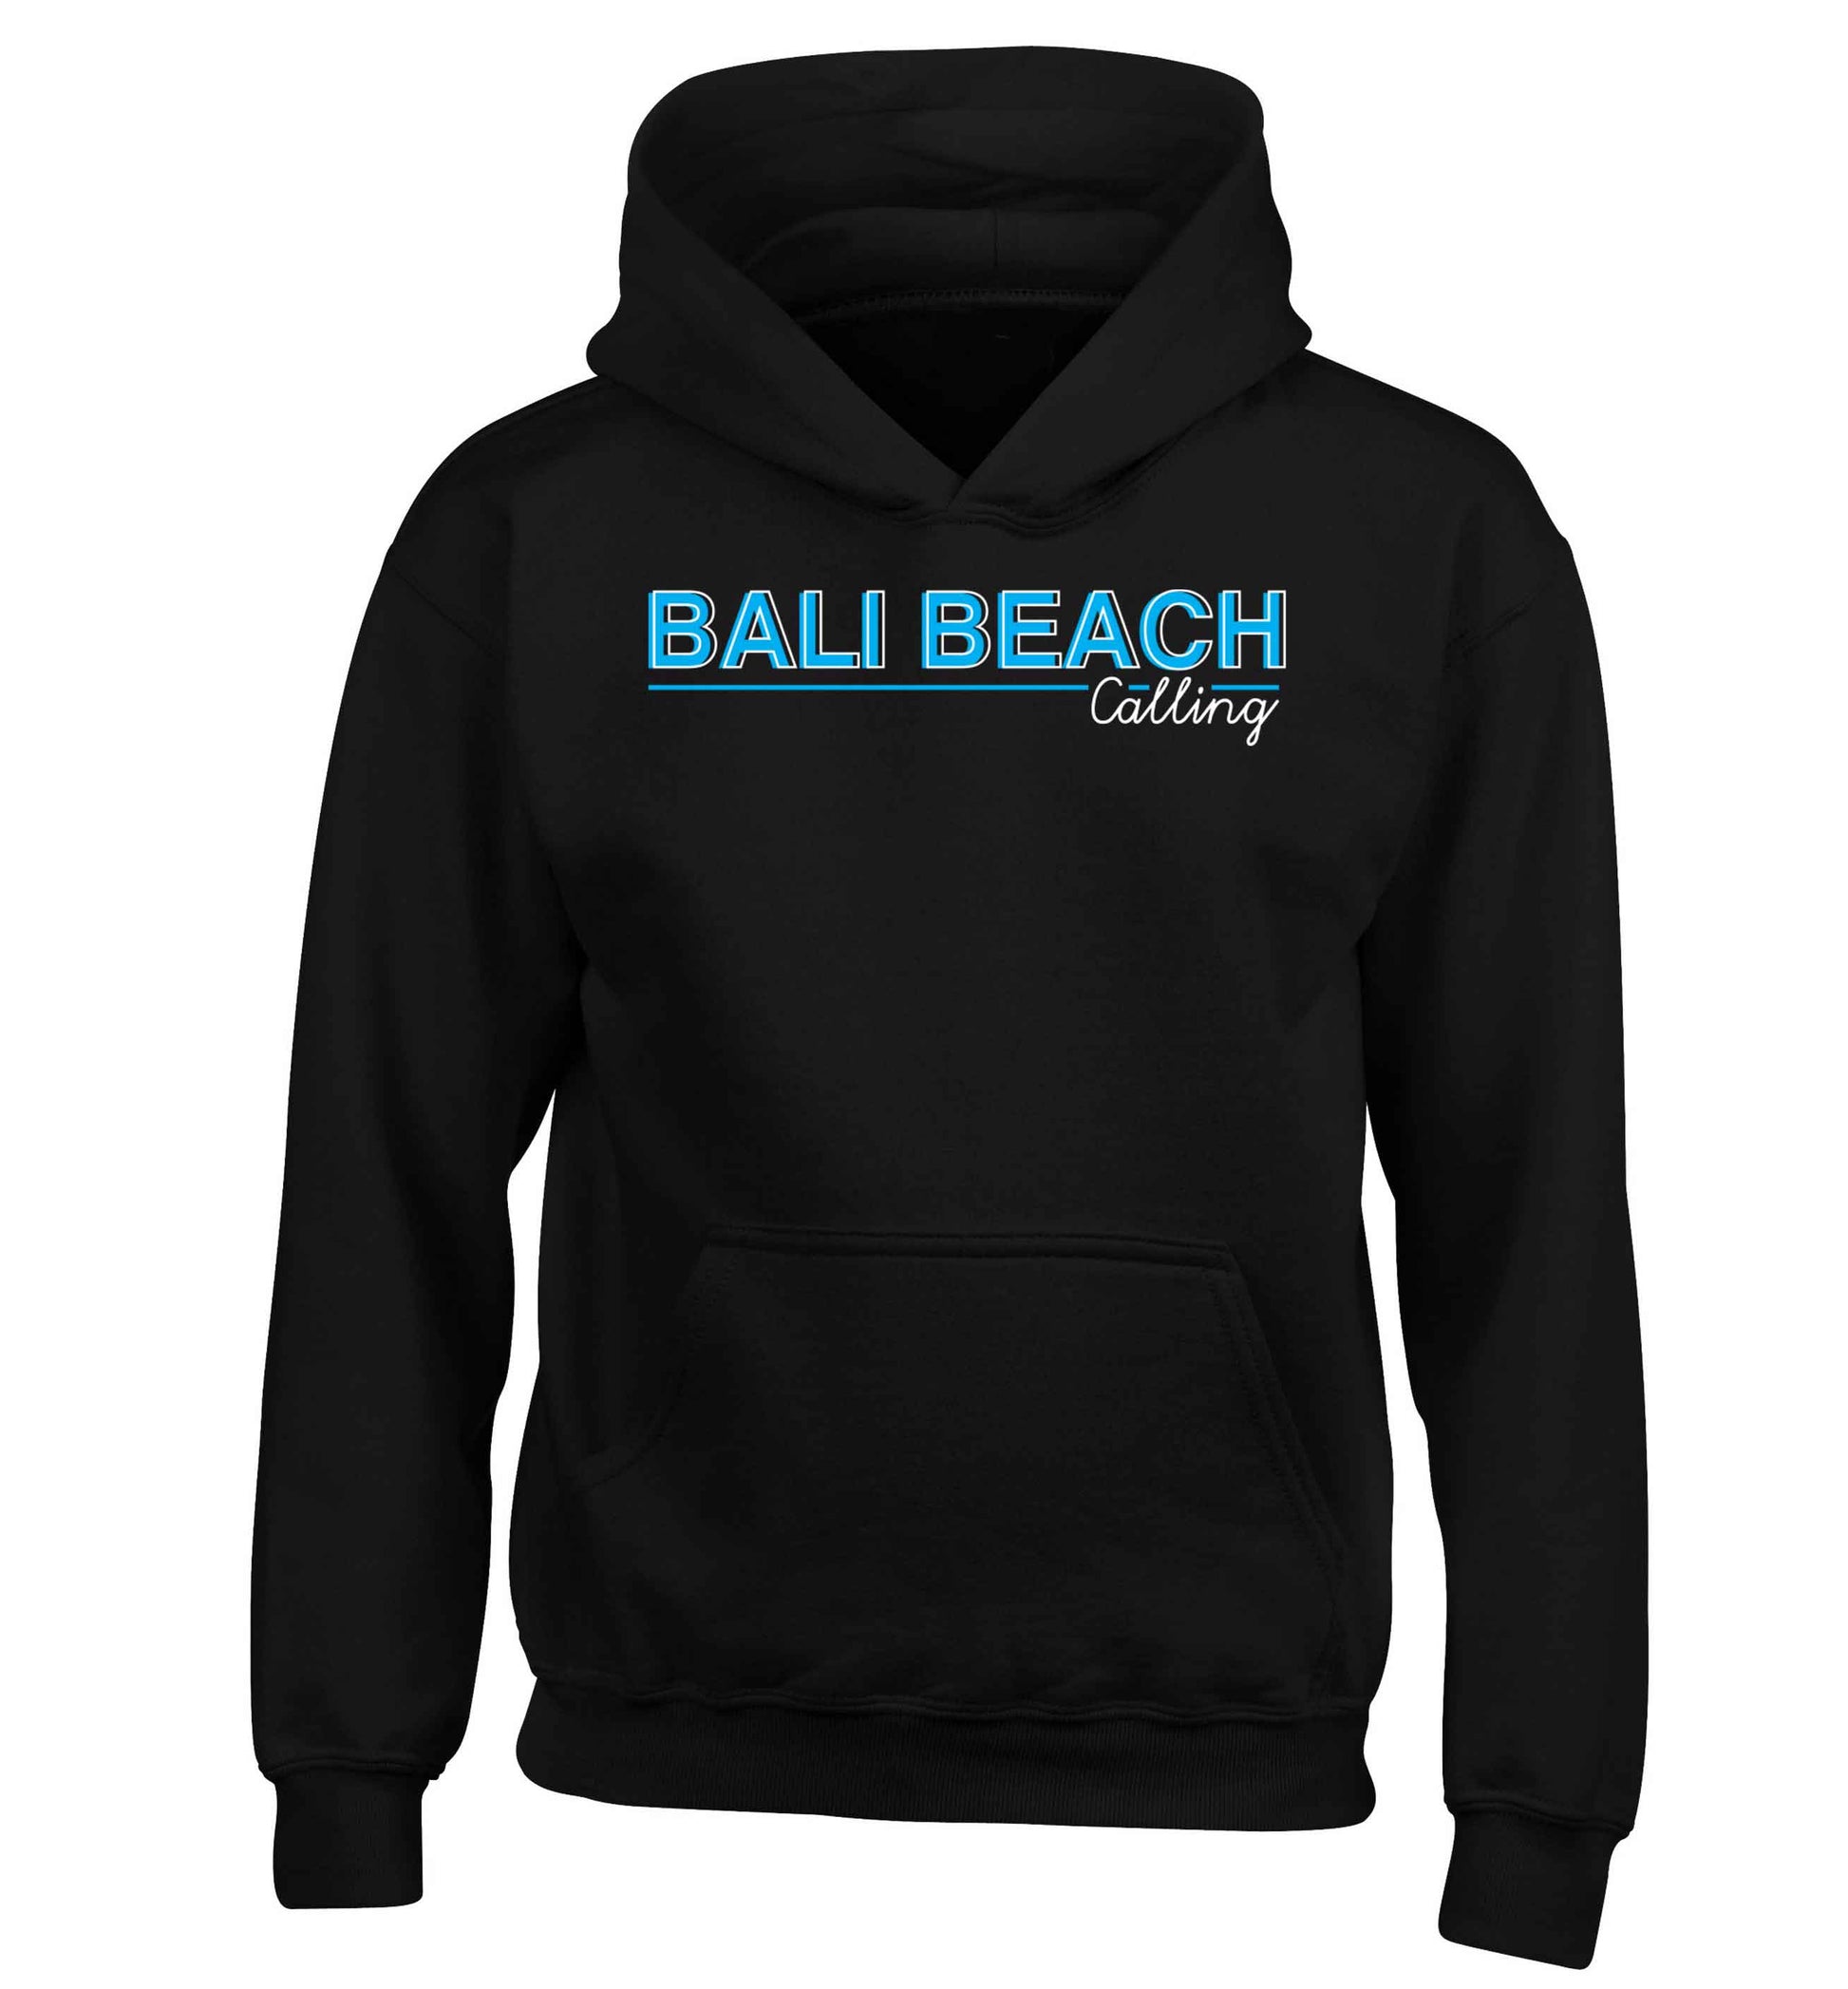 Bali beach calling children's black hoodie 12-13 Years